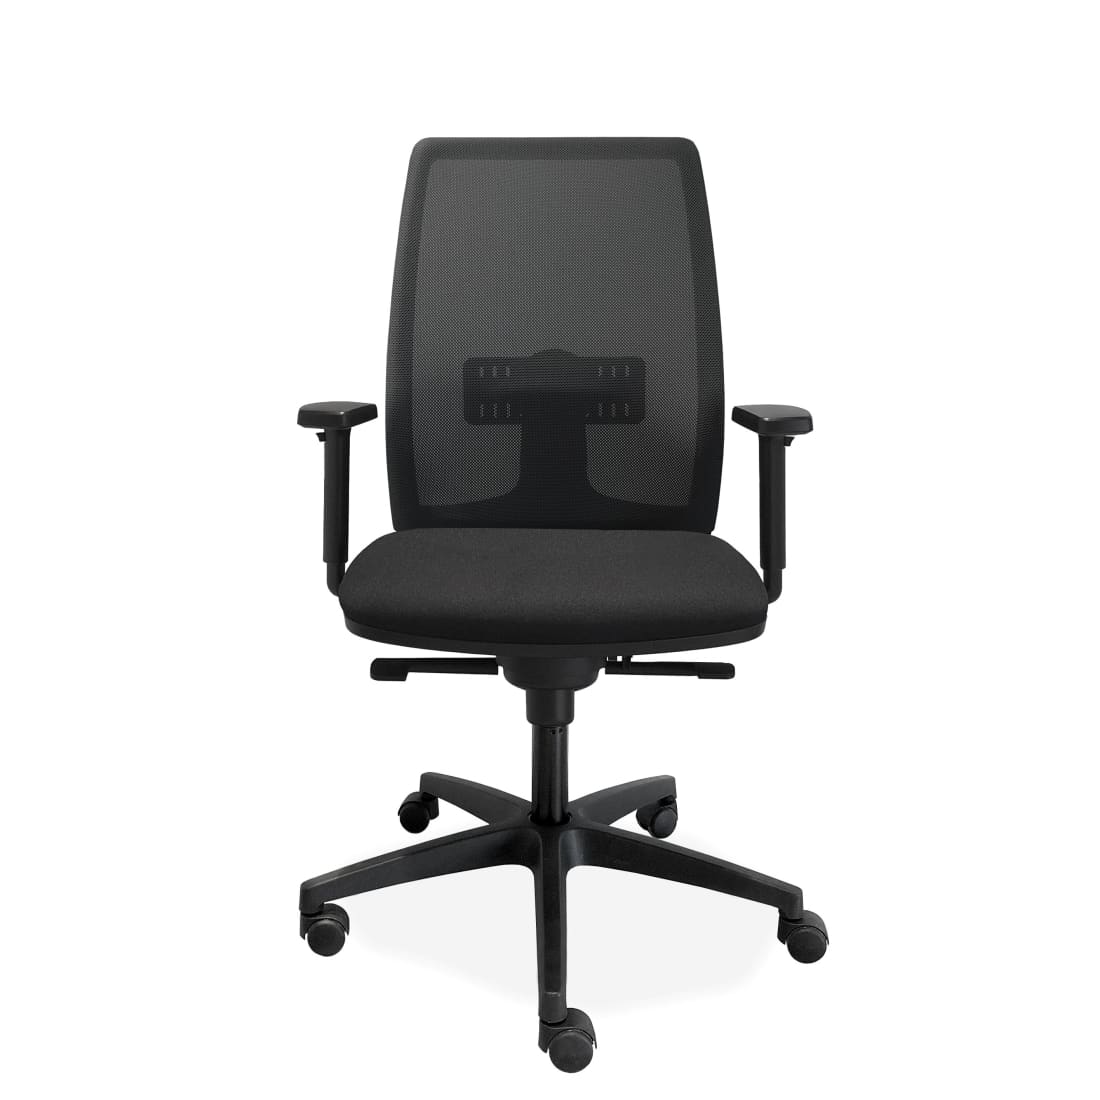 bureaustoel-ergonomische-mesh-de-singel-nen-1335-bureaustoelen-meubels-stoel-office-723_29883b2d-bc8b-402c-ac54-74c9a3018724.jpg